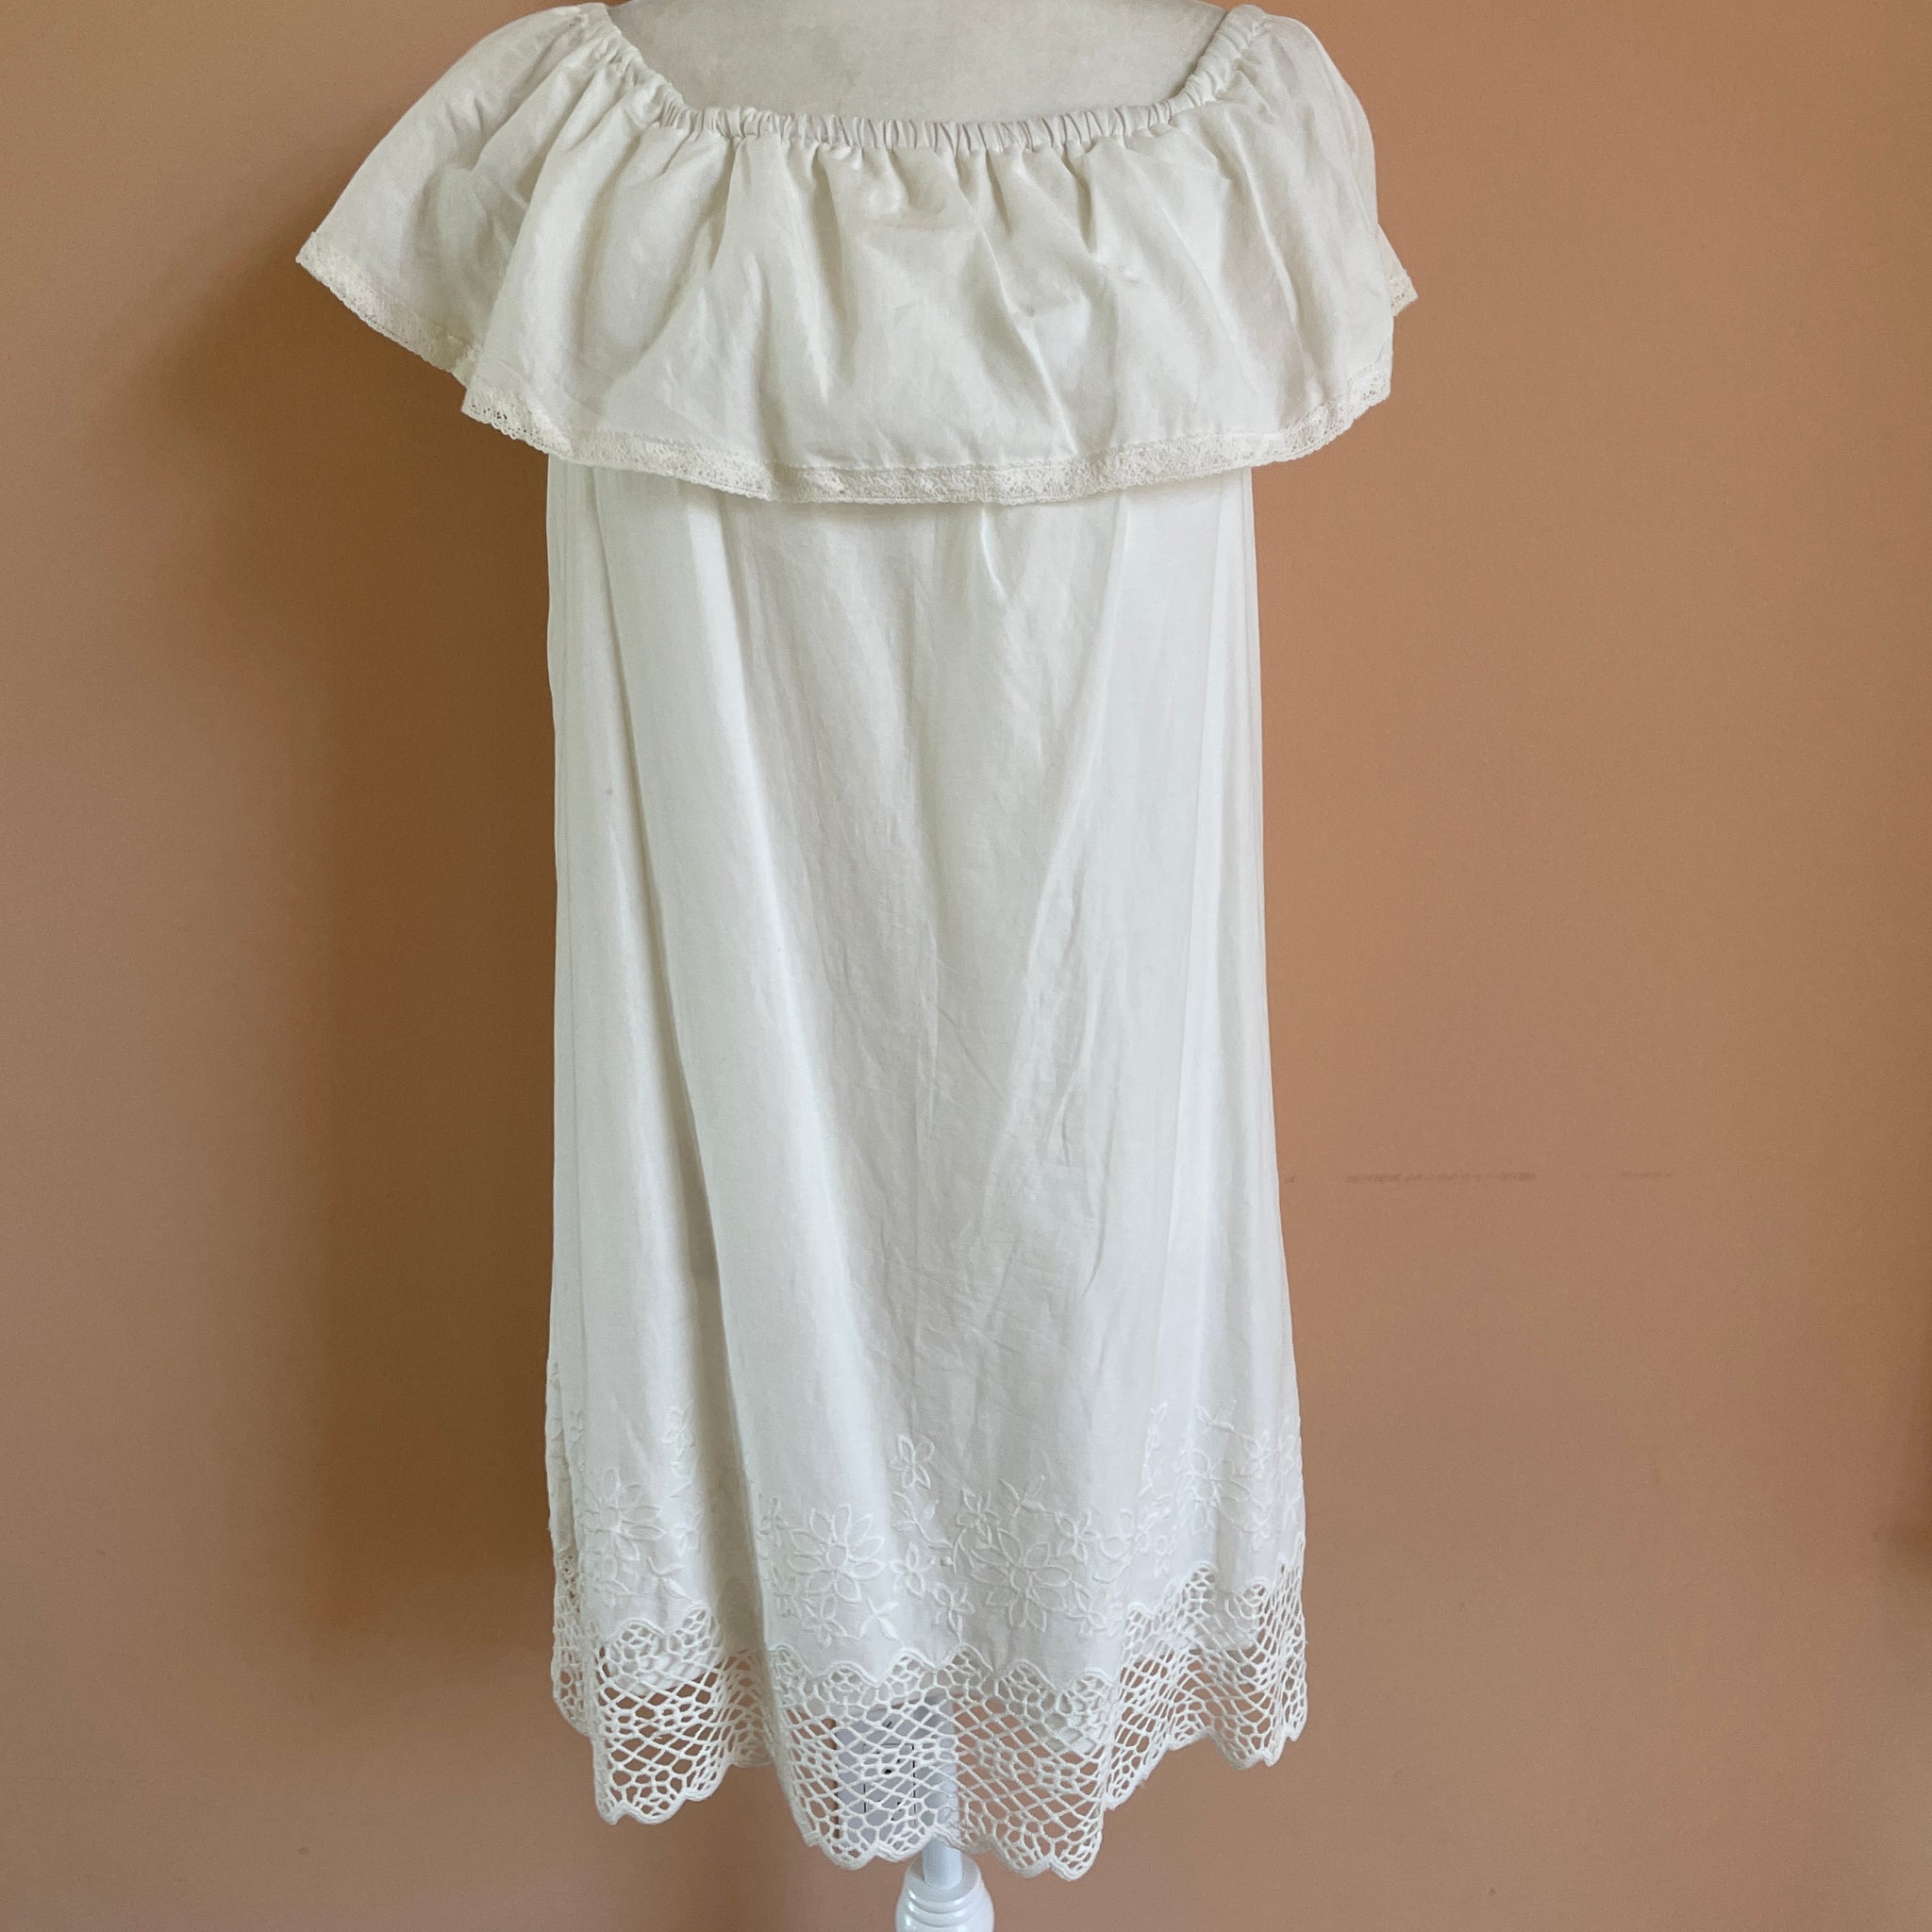 2000's white summer dress